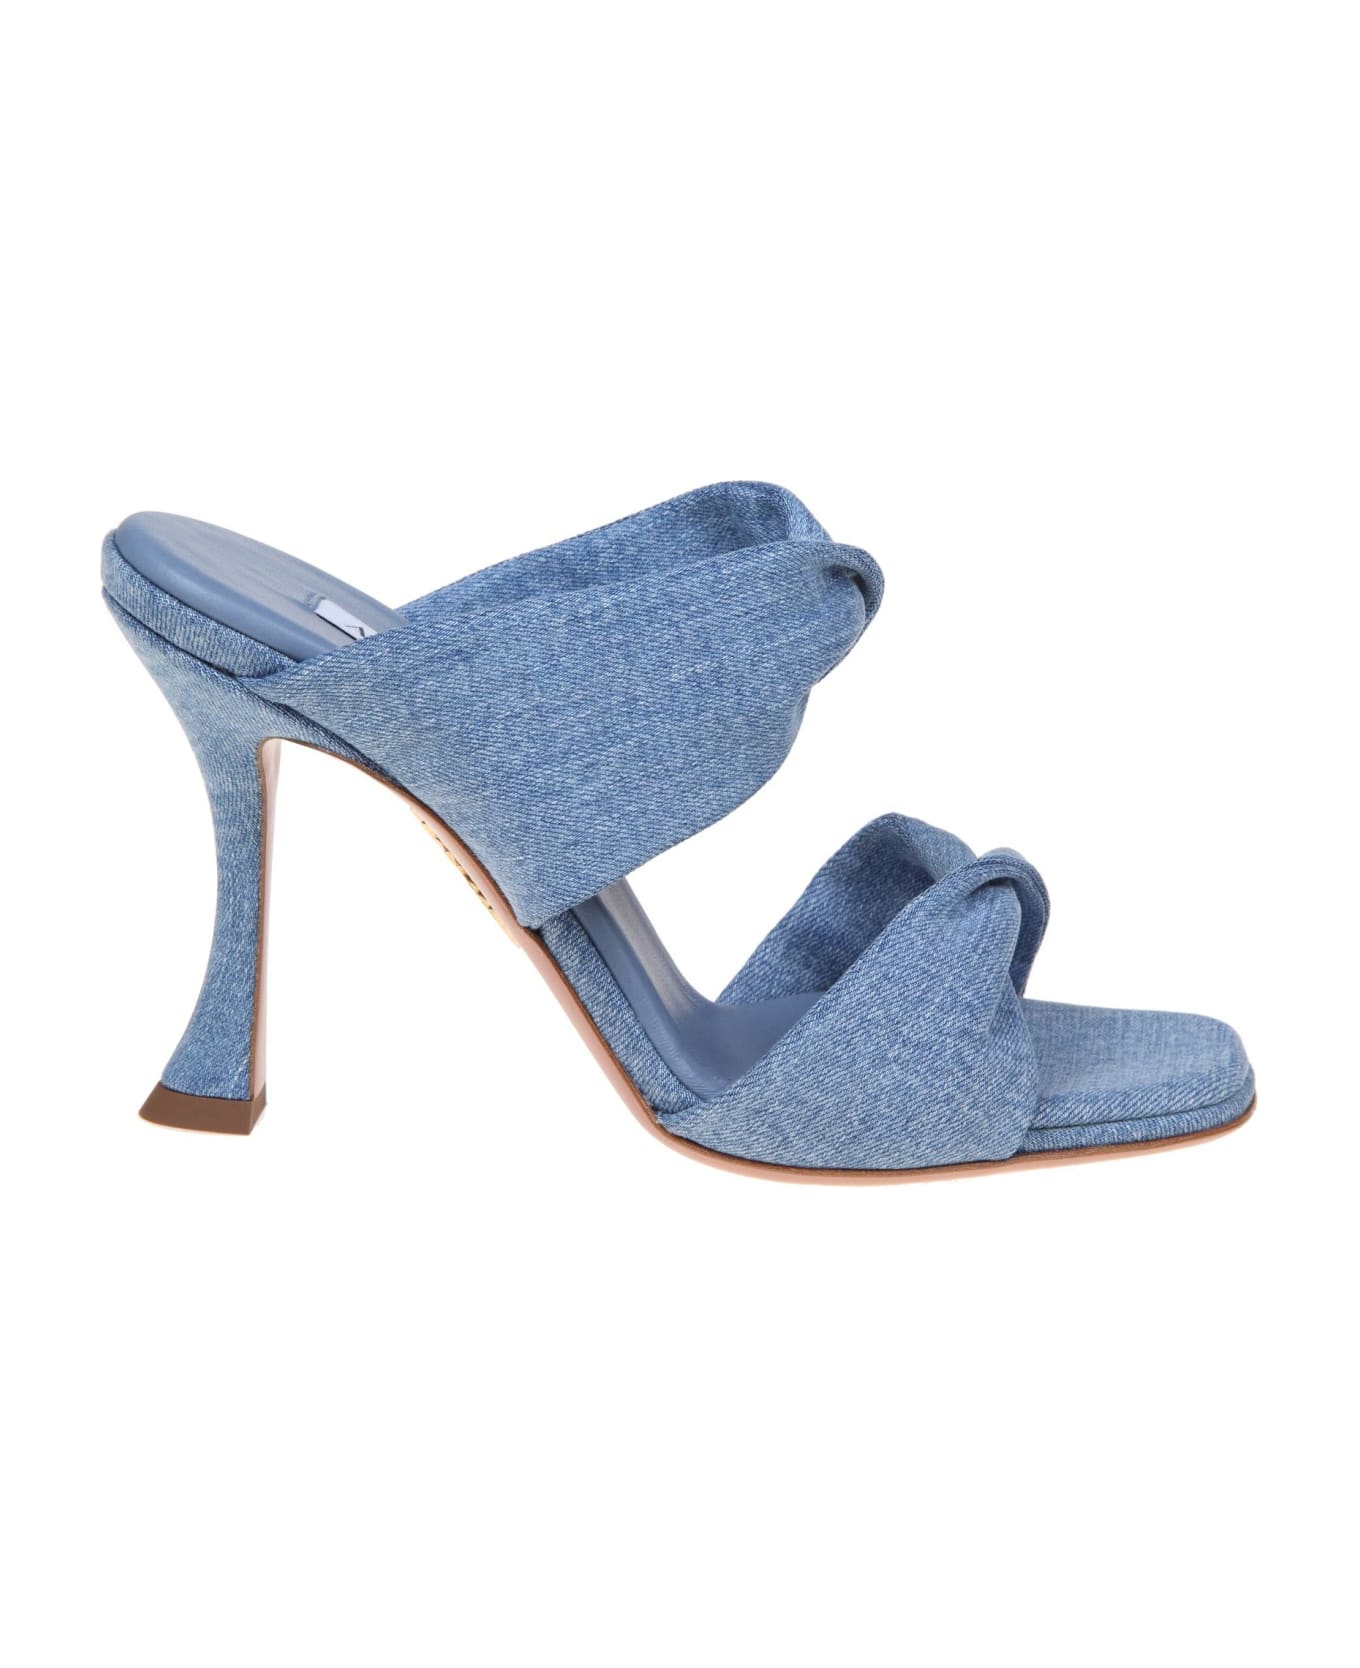 Aquazzura Twist 95 Sandal In Denim Fabric - Light blue